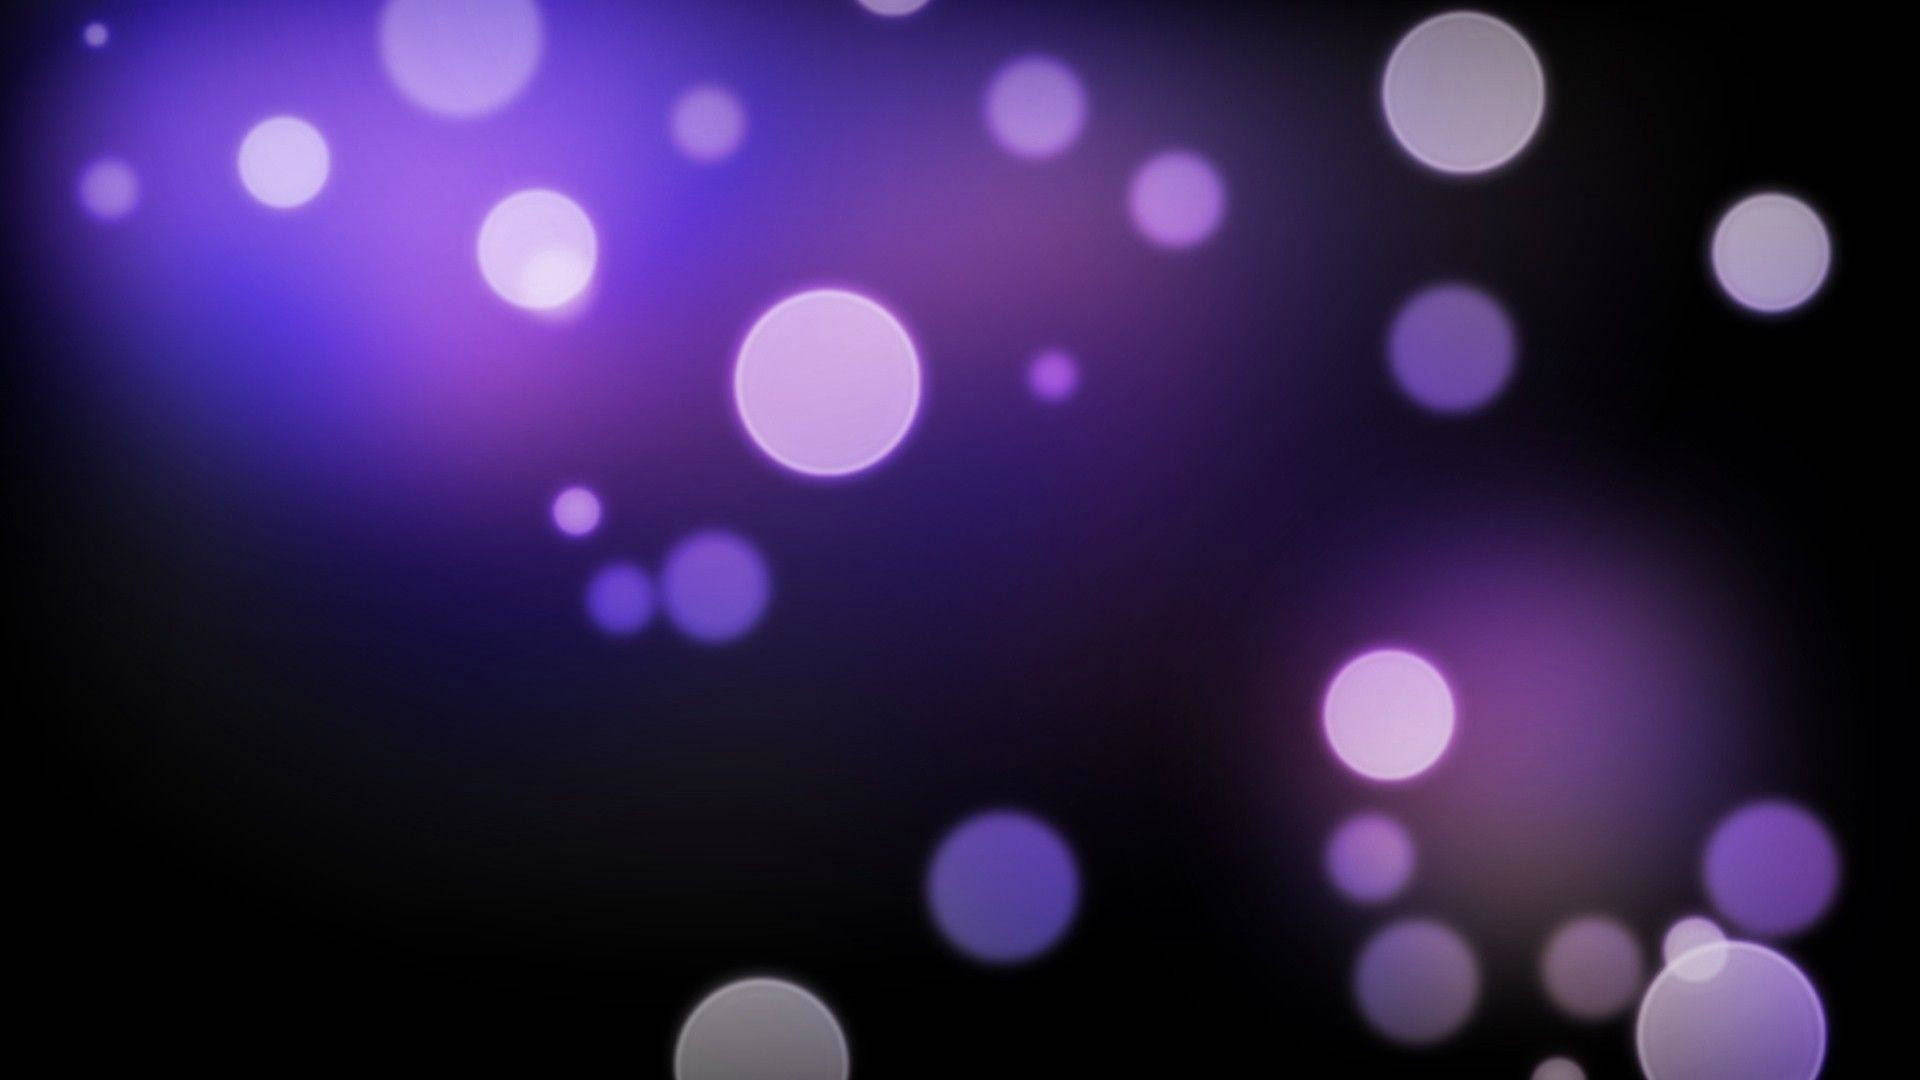 Dark Purple Gradient With Lights Background